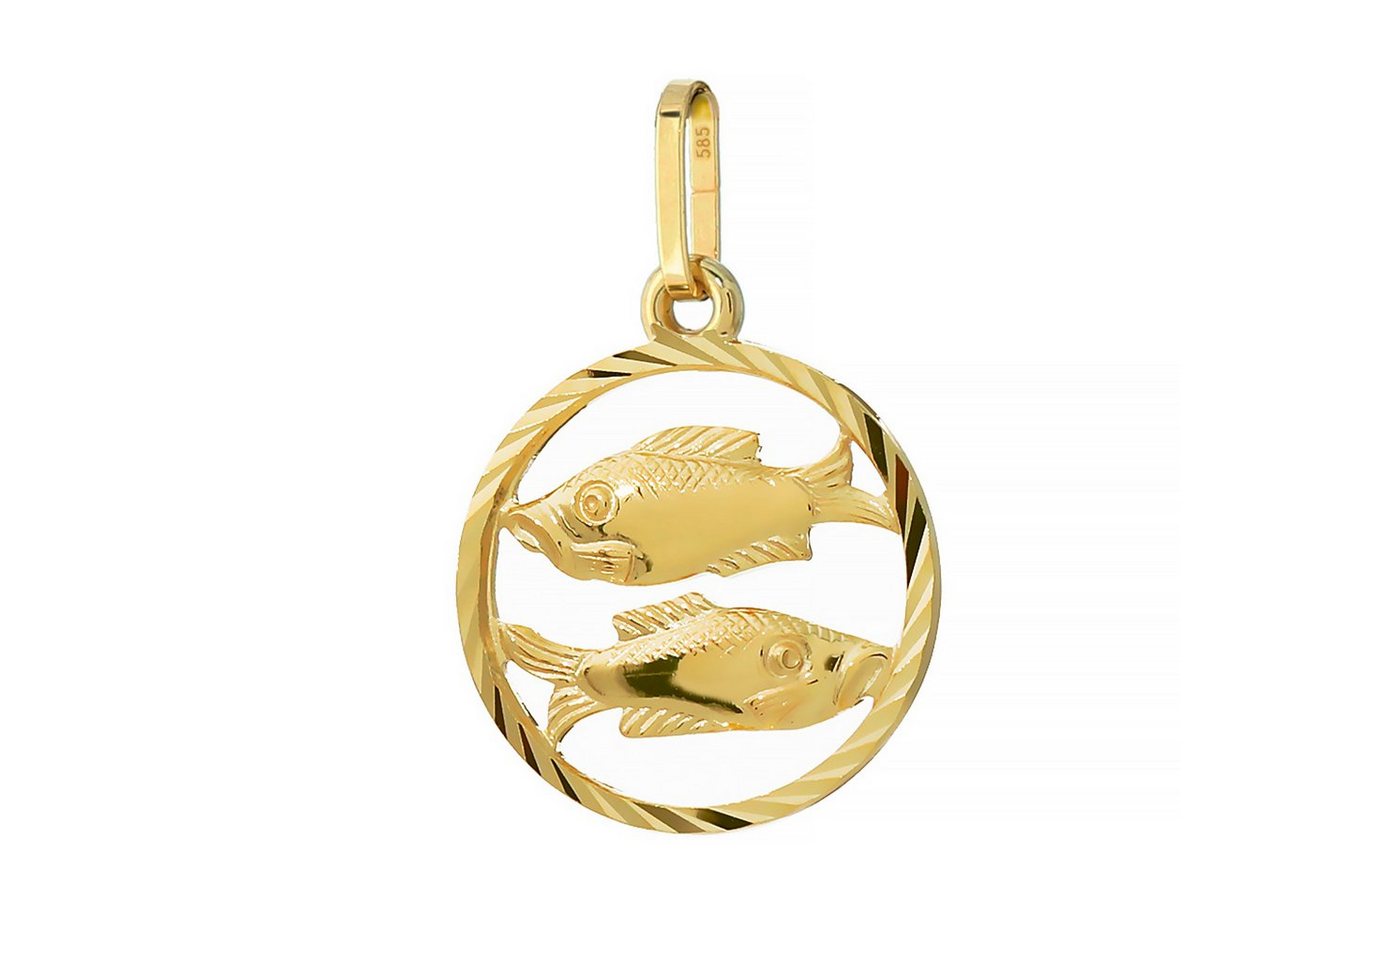 NKlaus Kettenanhänger Fisch Sternzeichen 585 Gelb Gold 14 Karat 15mm Kettenanhänger Horoskop von NKlaus